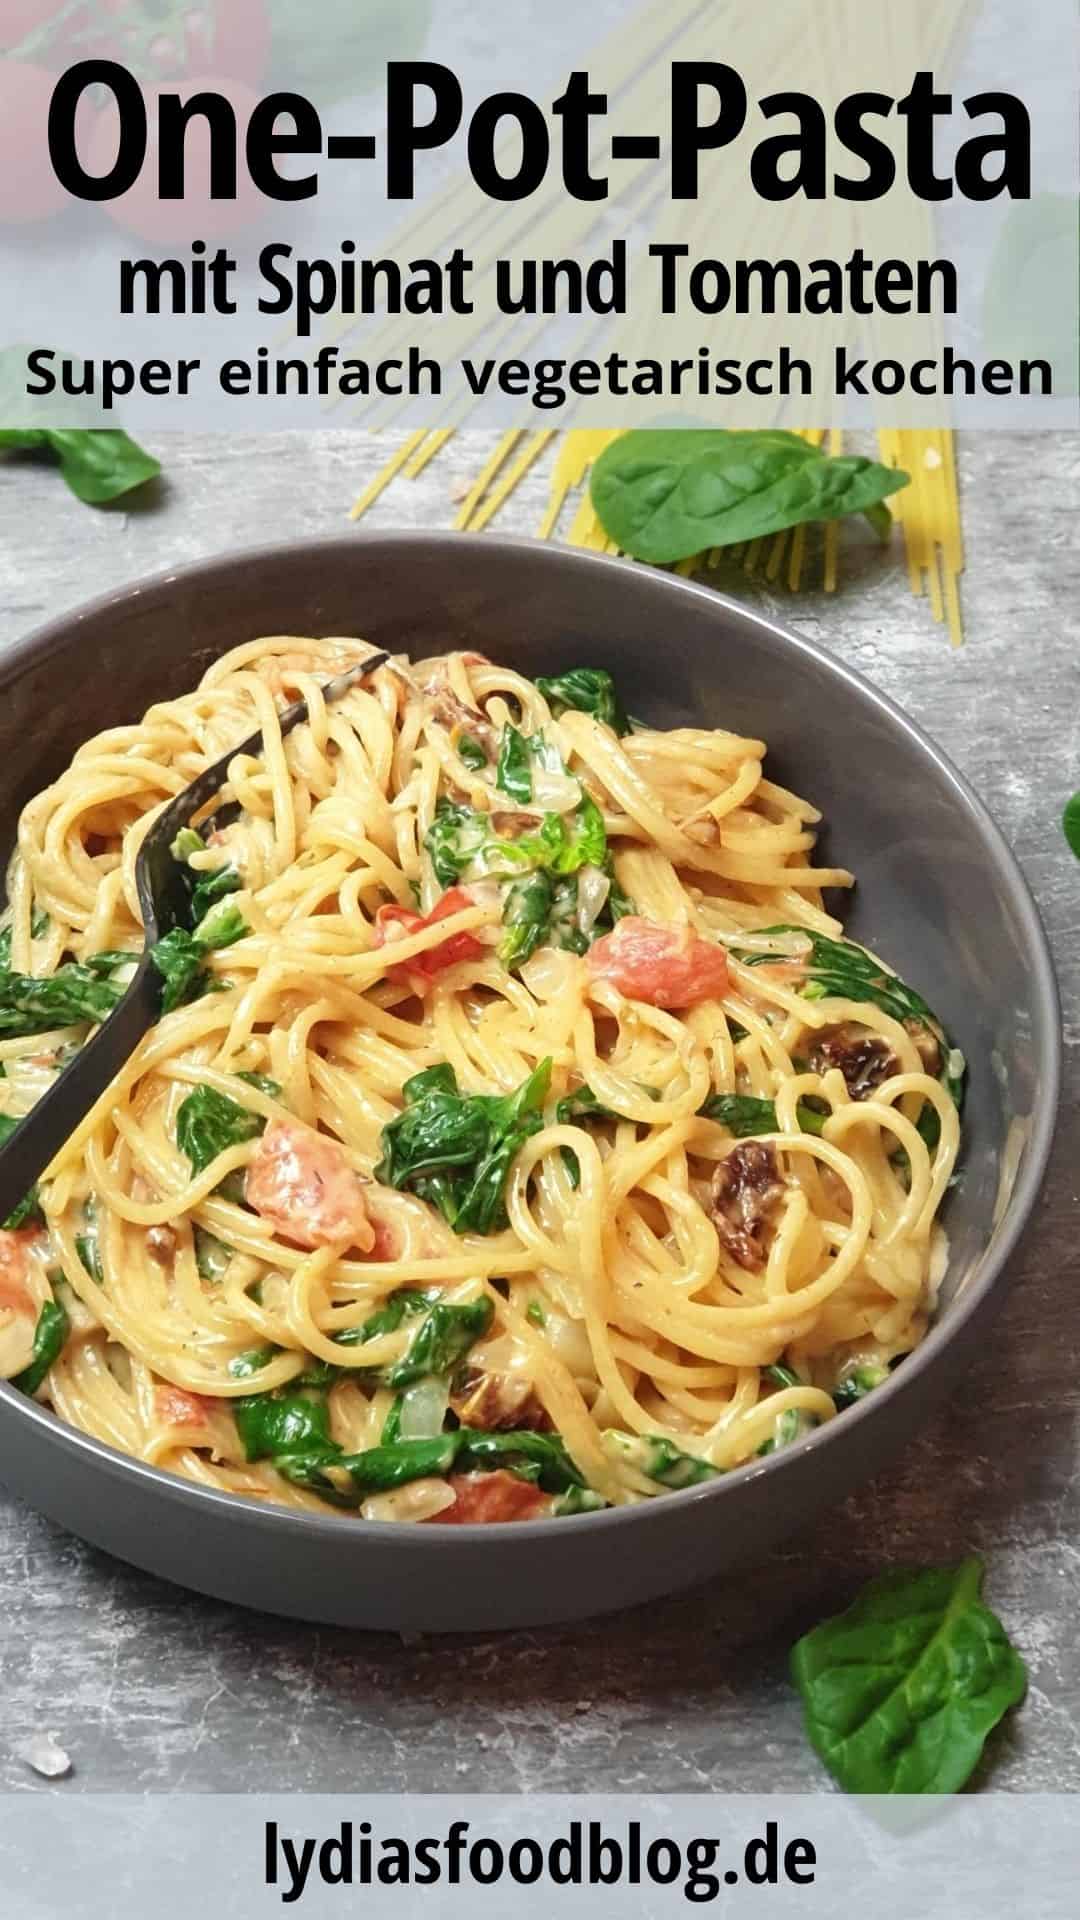 In einer grauen Schale angerichtet Spaghetti mit cremiger Soße und Gemüse. Im Hintergrund Deko.